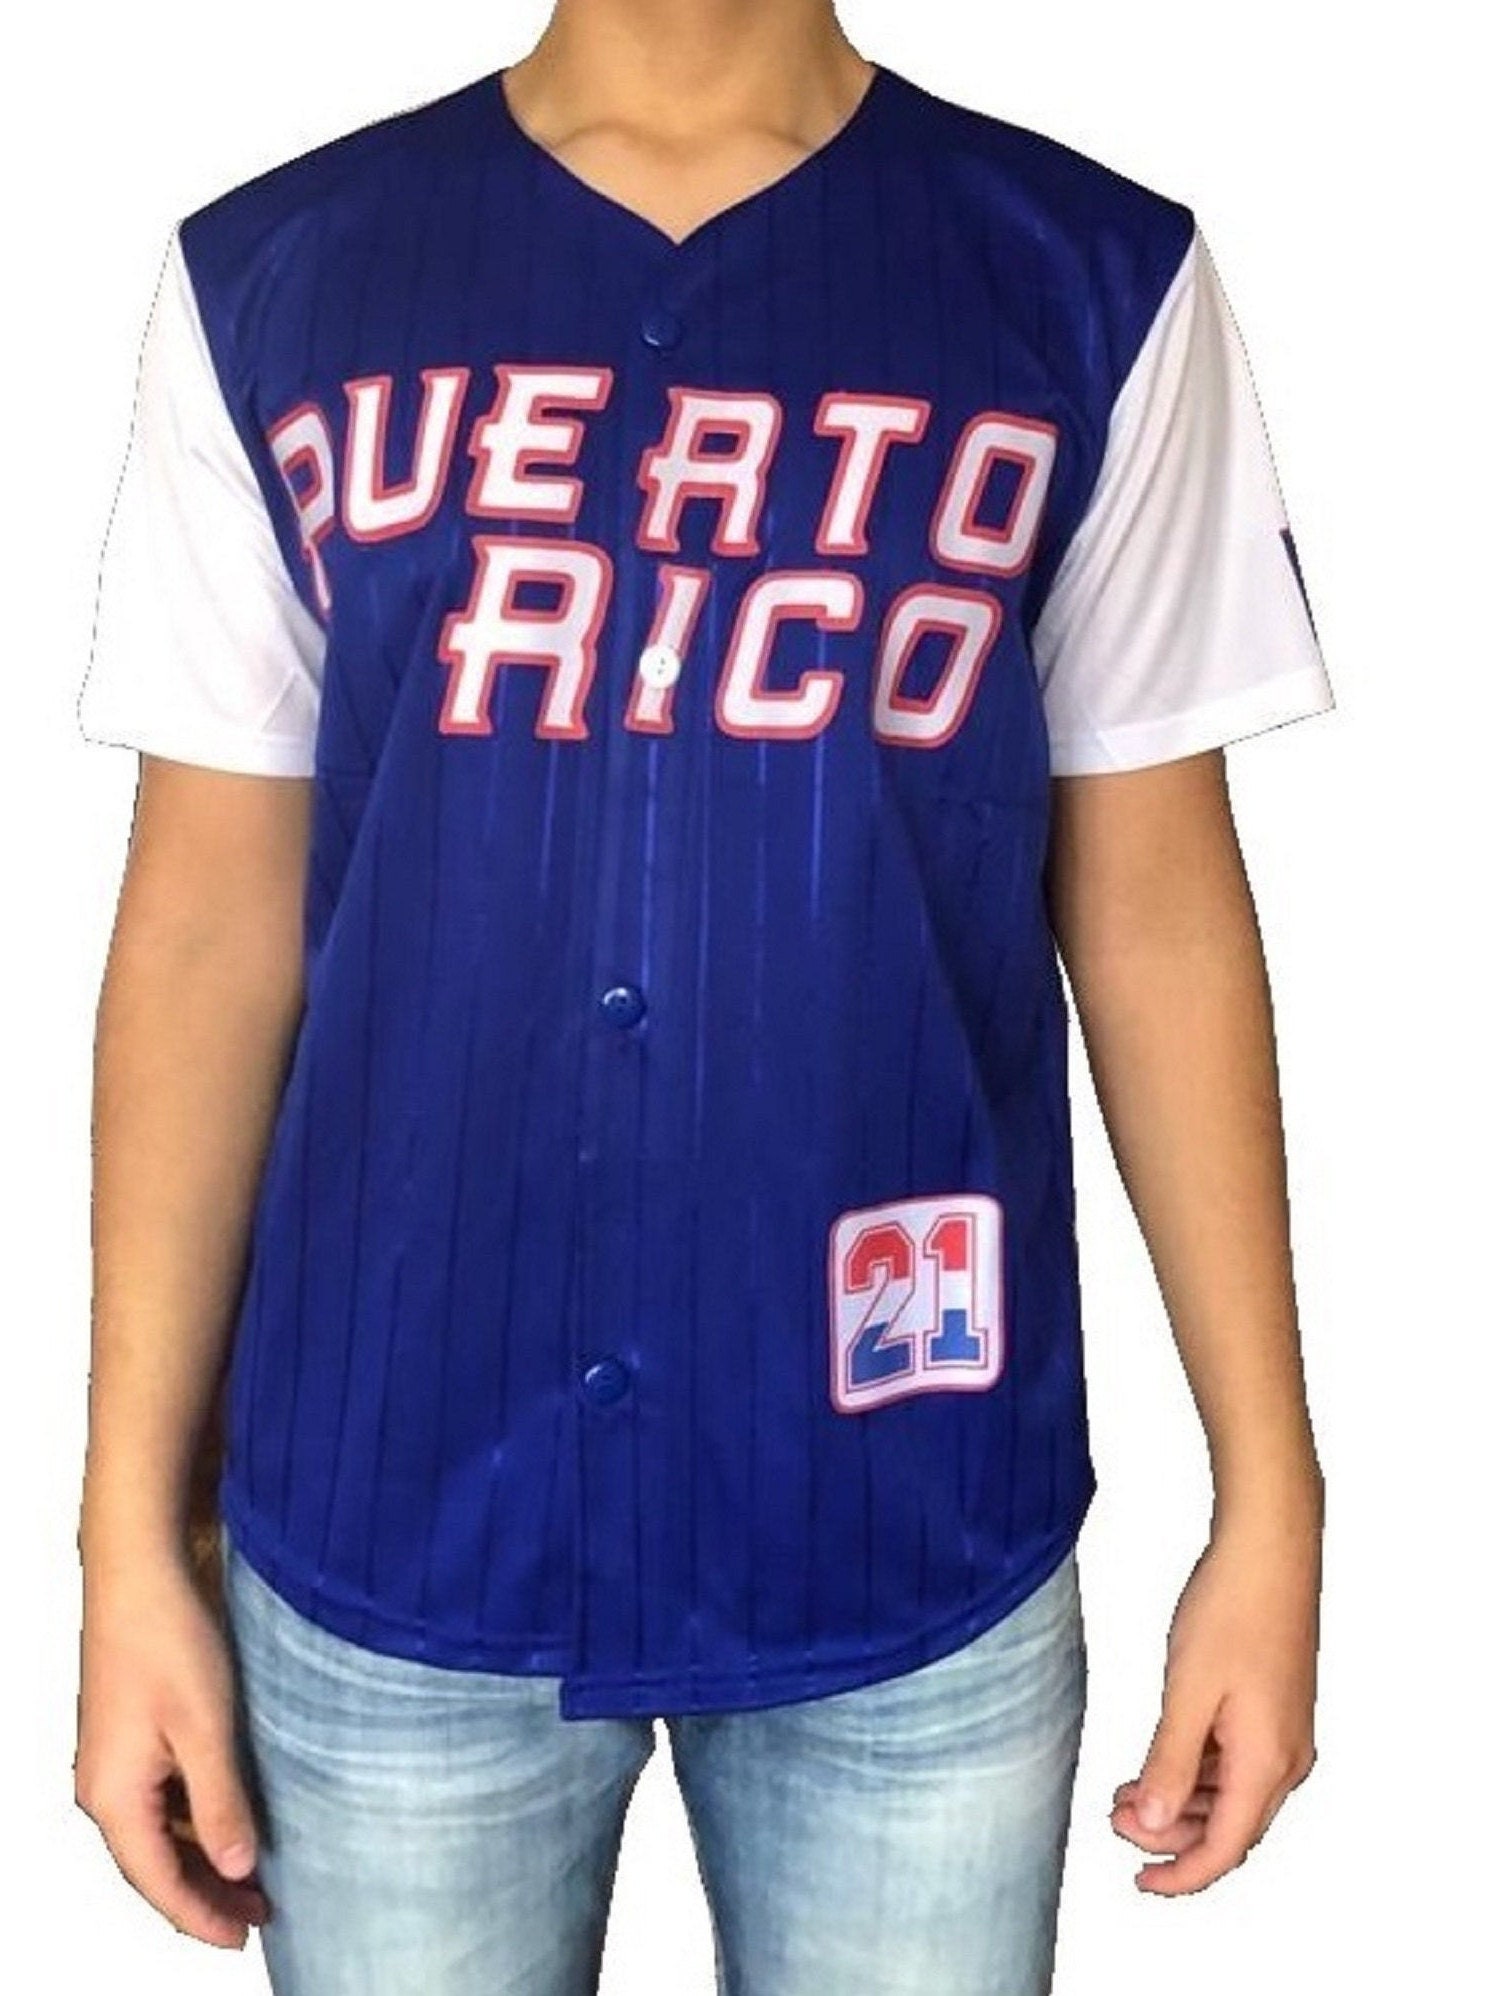 puerto rico baseball jersey